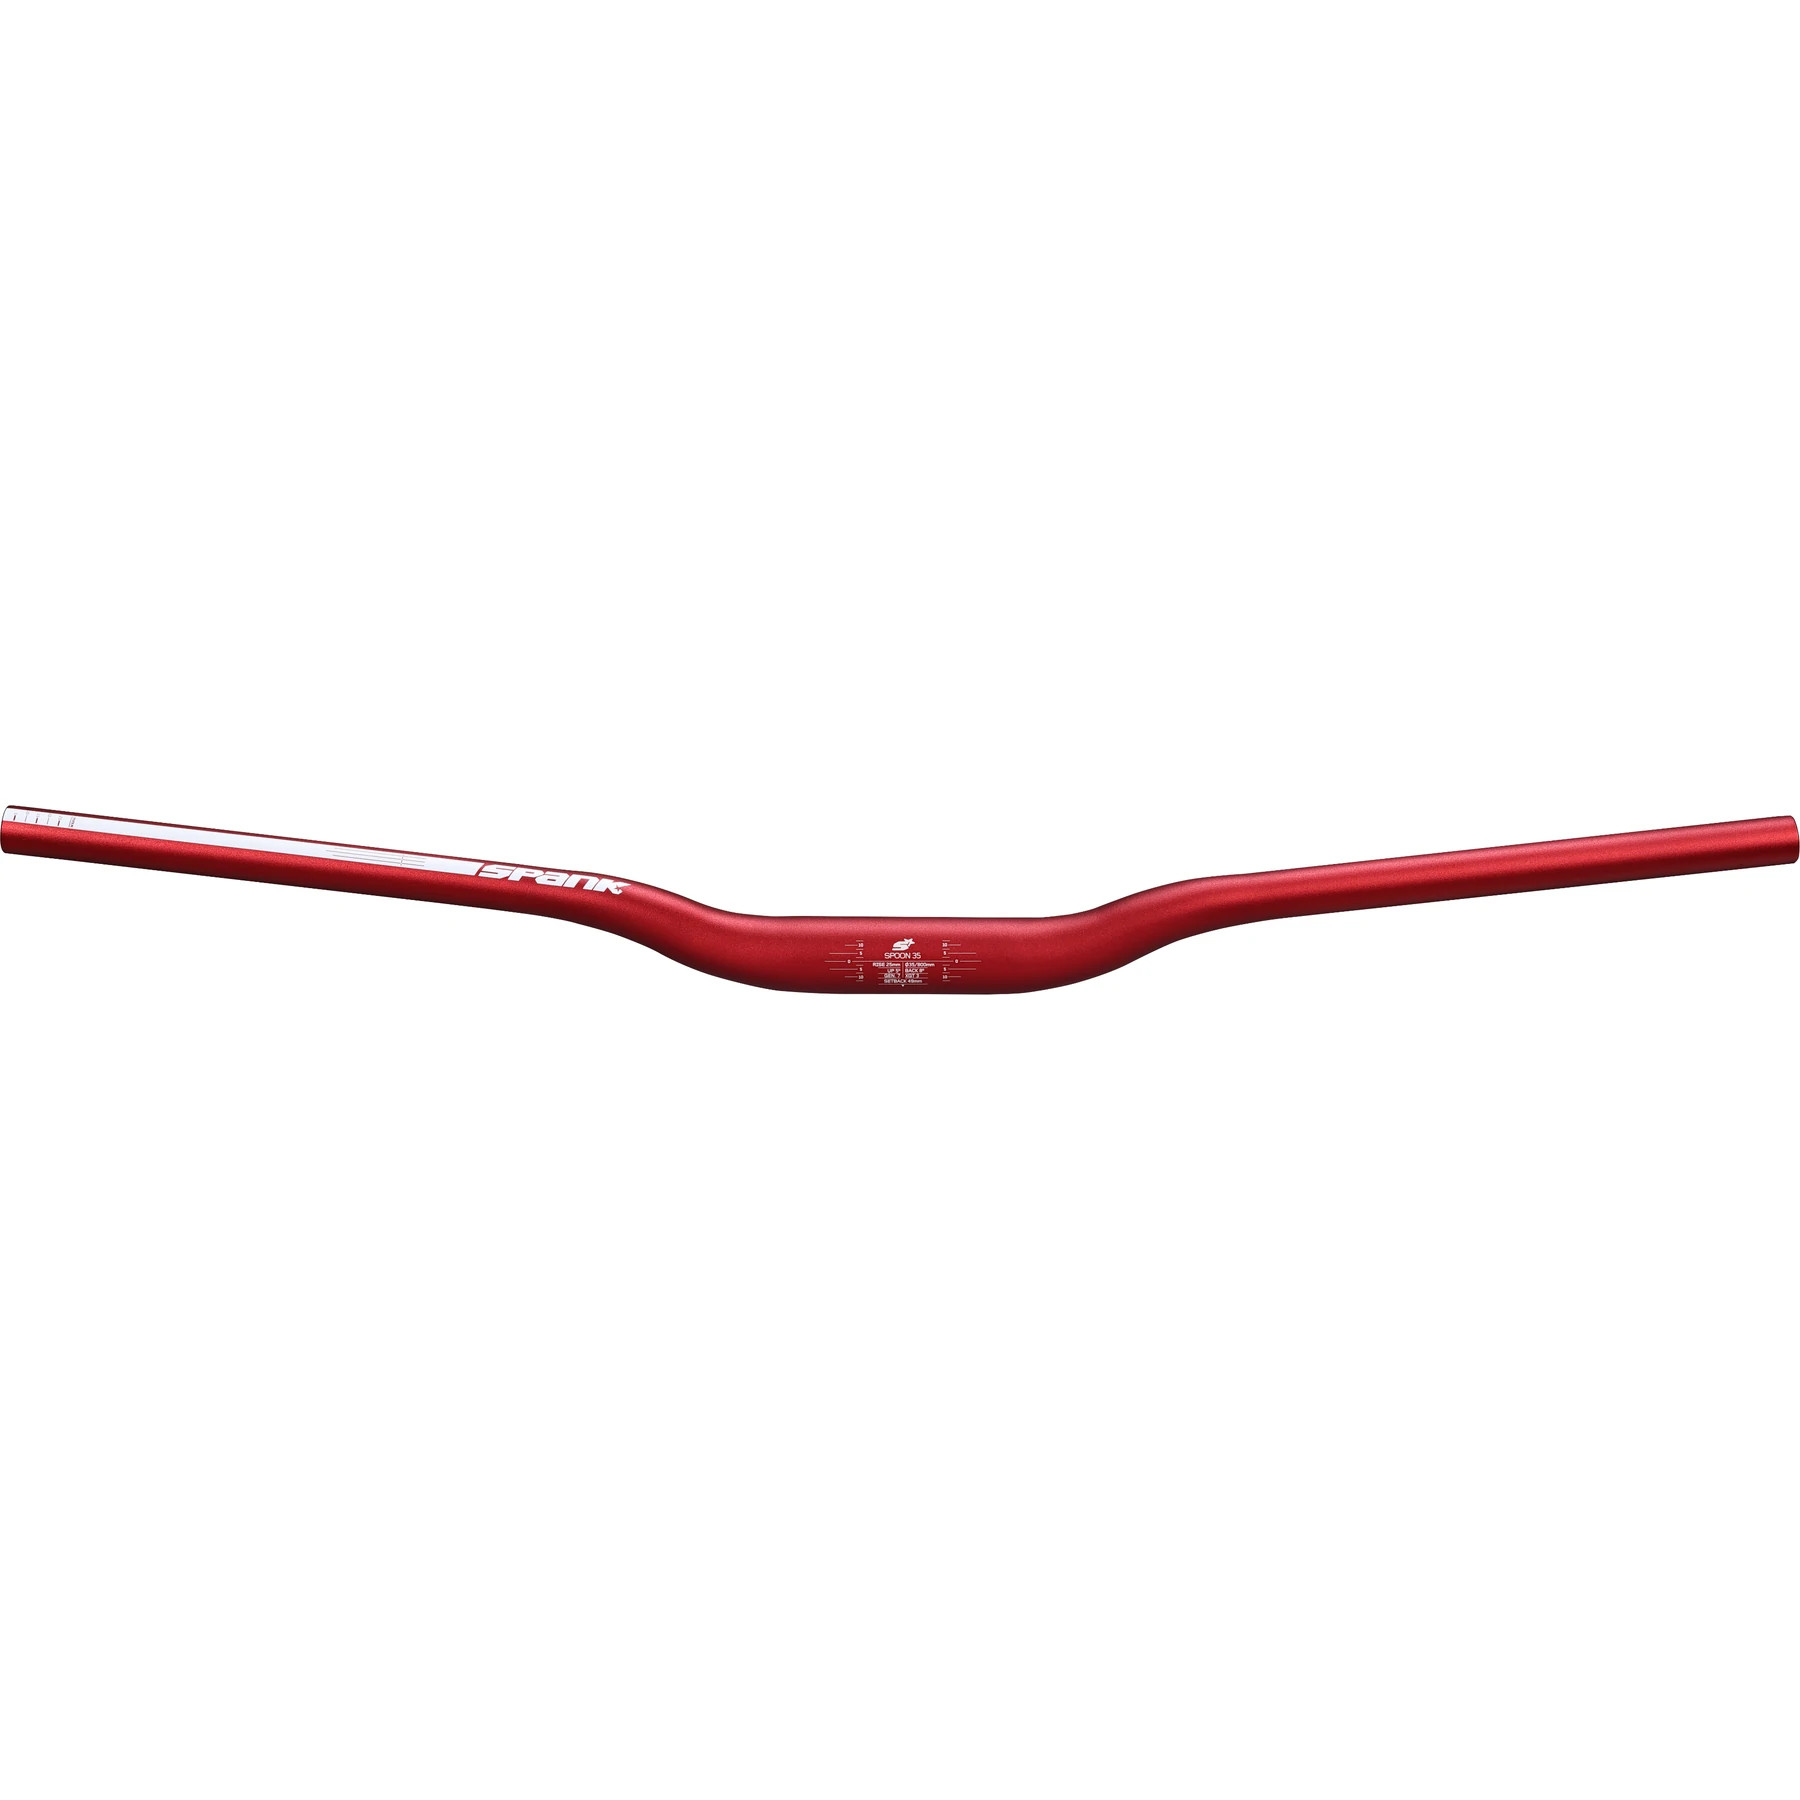 Productfoto van Spank Spoon 35 MTB Handlebar - 800mm - red